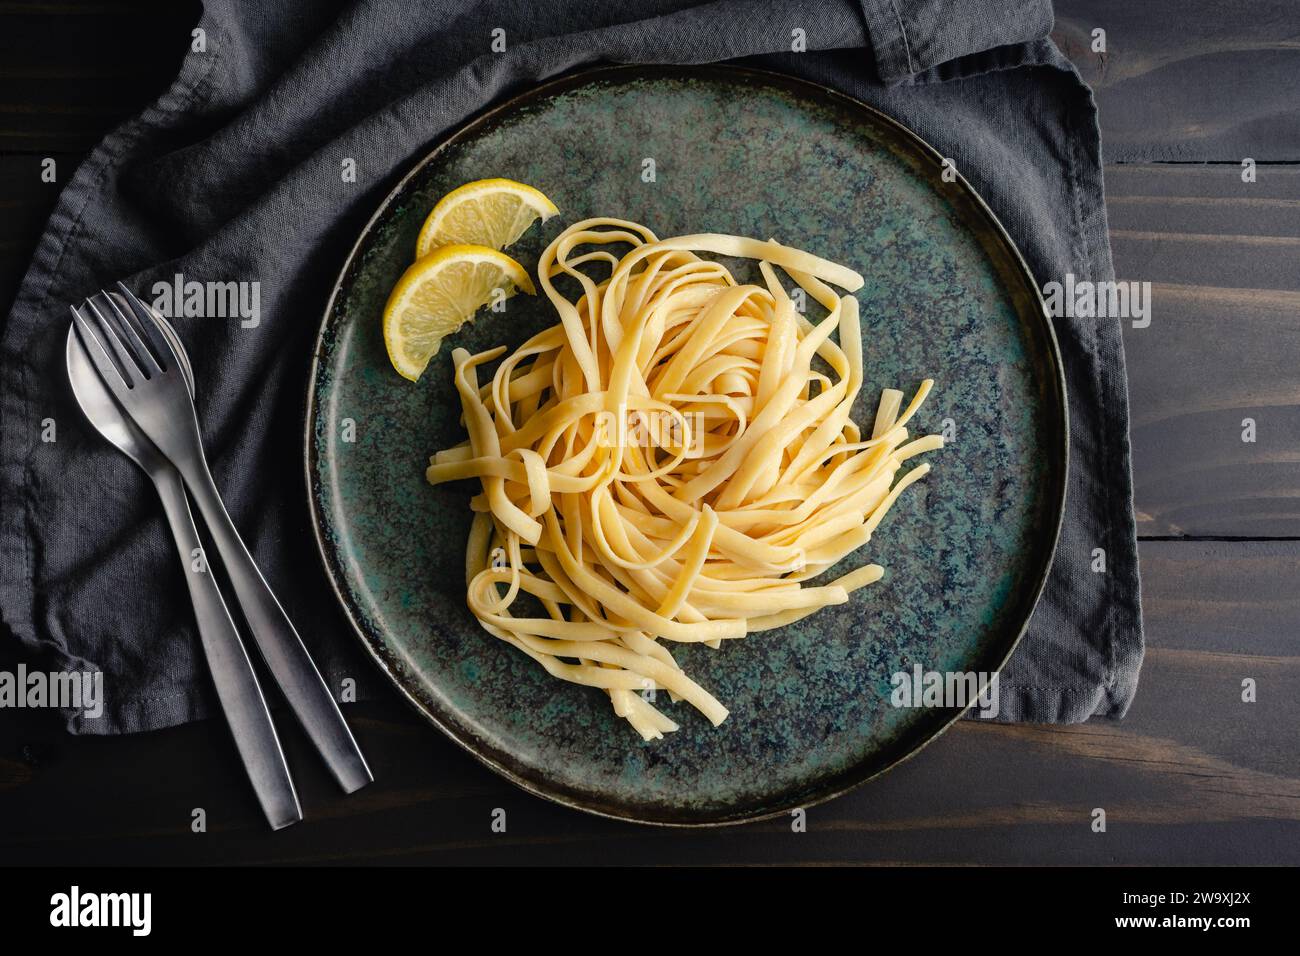 Fettuccine mit Limonen-Mascarponesauce: Ein Teller mit breiten Nudeln, garniert mit Zitronenscheiben Stockfoto